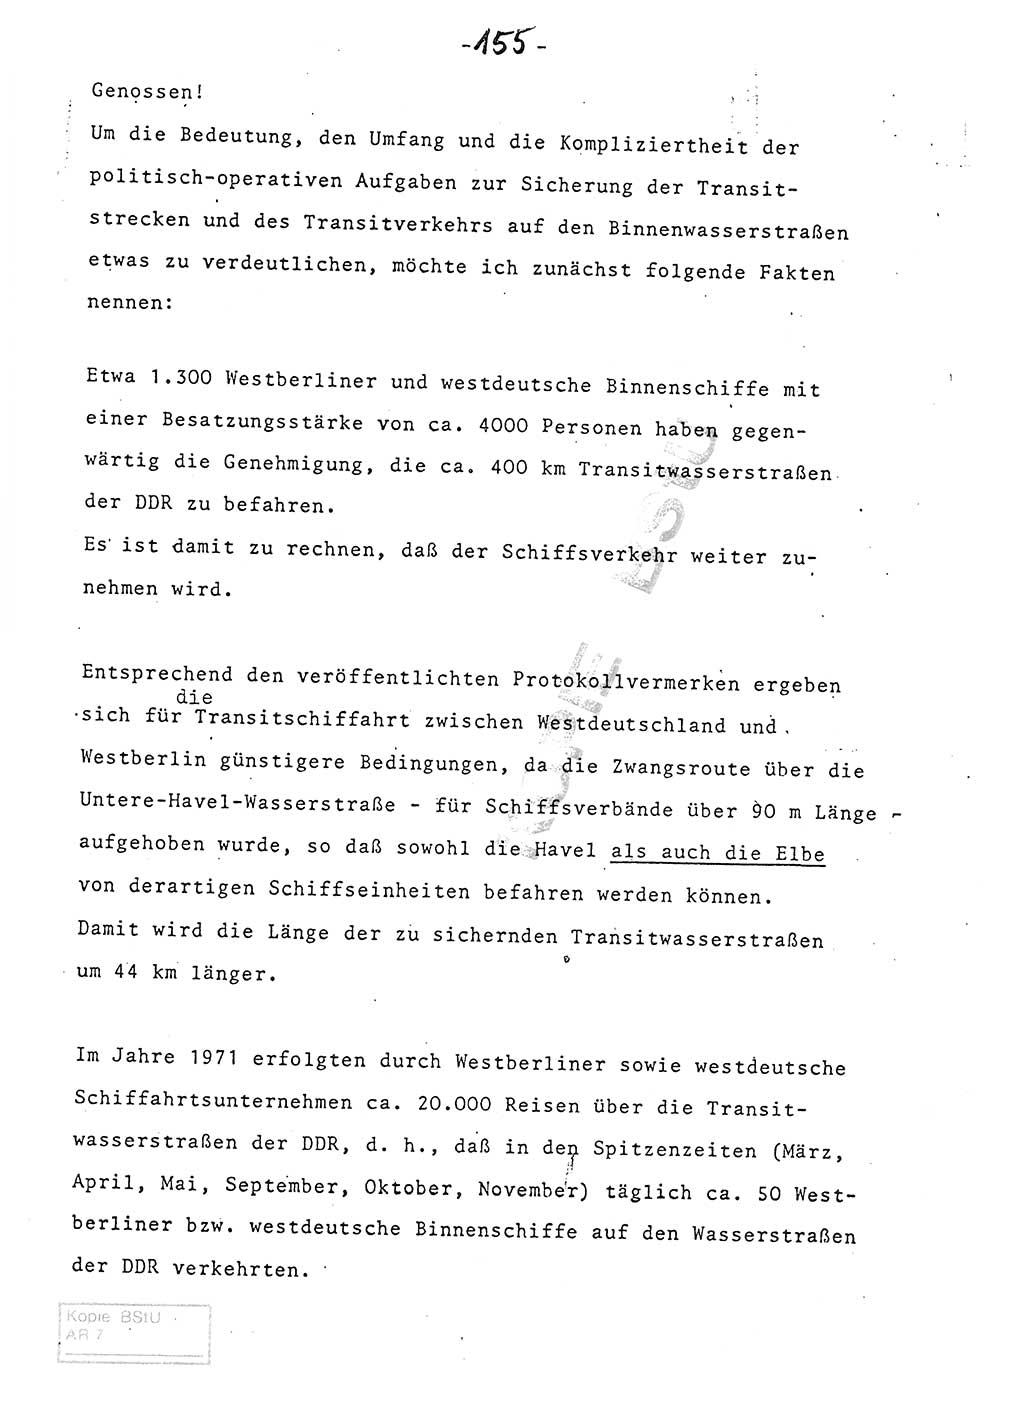 Referat (Entwurf) des Genossen Minister (Generaloberst Erich Mielke) auf der Dienstkonferenz 1972, Ministerium für Staatssicherheit (MfS) [Deutsche Demokratische Republik (DDR)], Der Minister, Geheime Verschlußsache (GVS) 008-150/72, Berlin 25.2.1972, Seite 155 (Ref. Entw. DK MfS DDR Min. GVS 008-150/72 1972, S. 155)